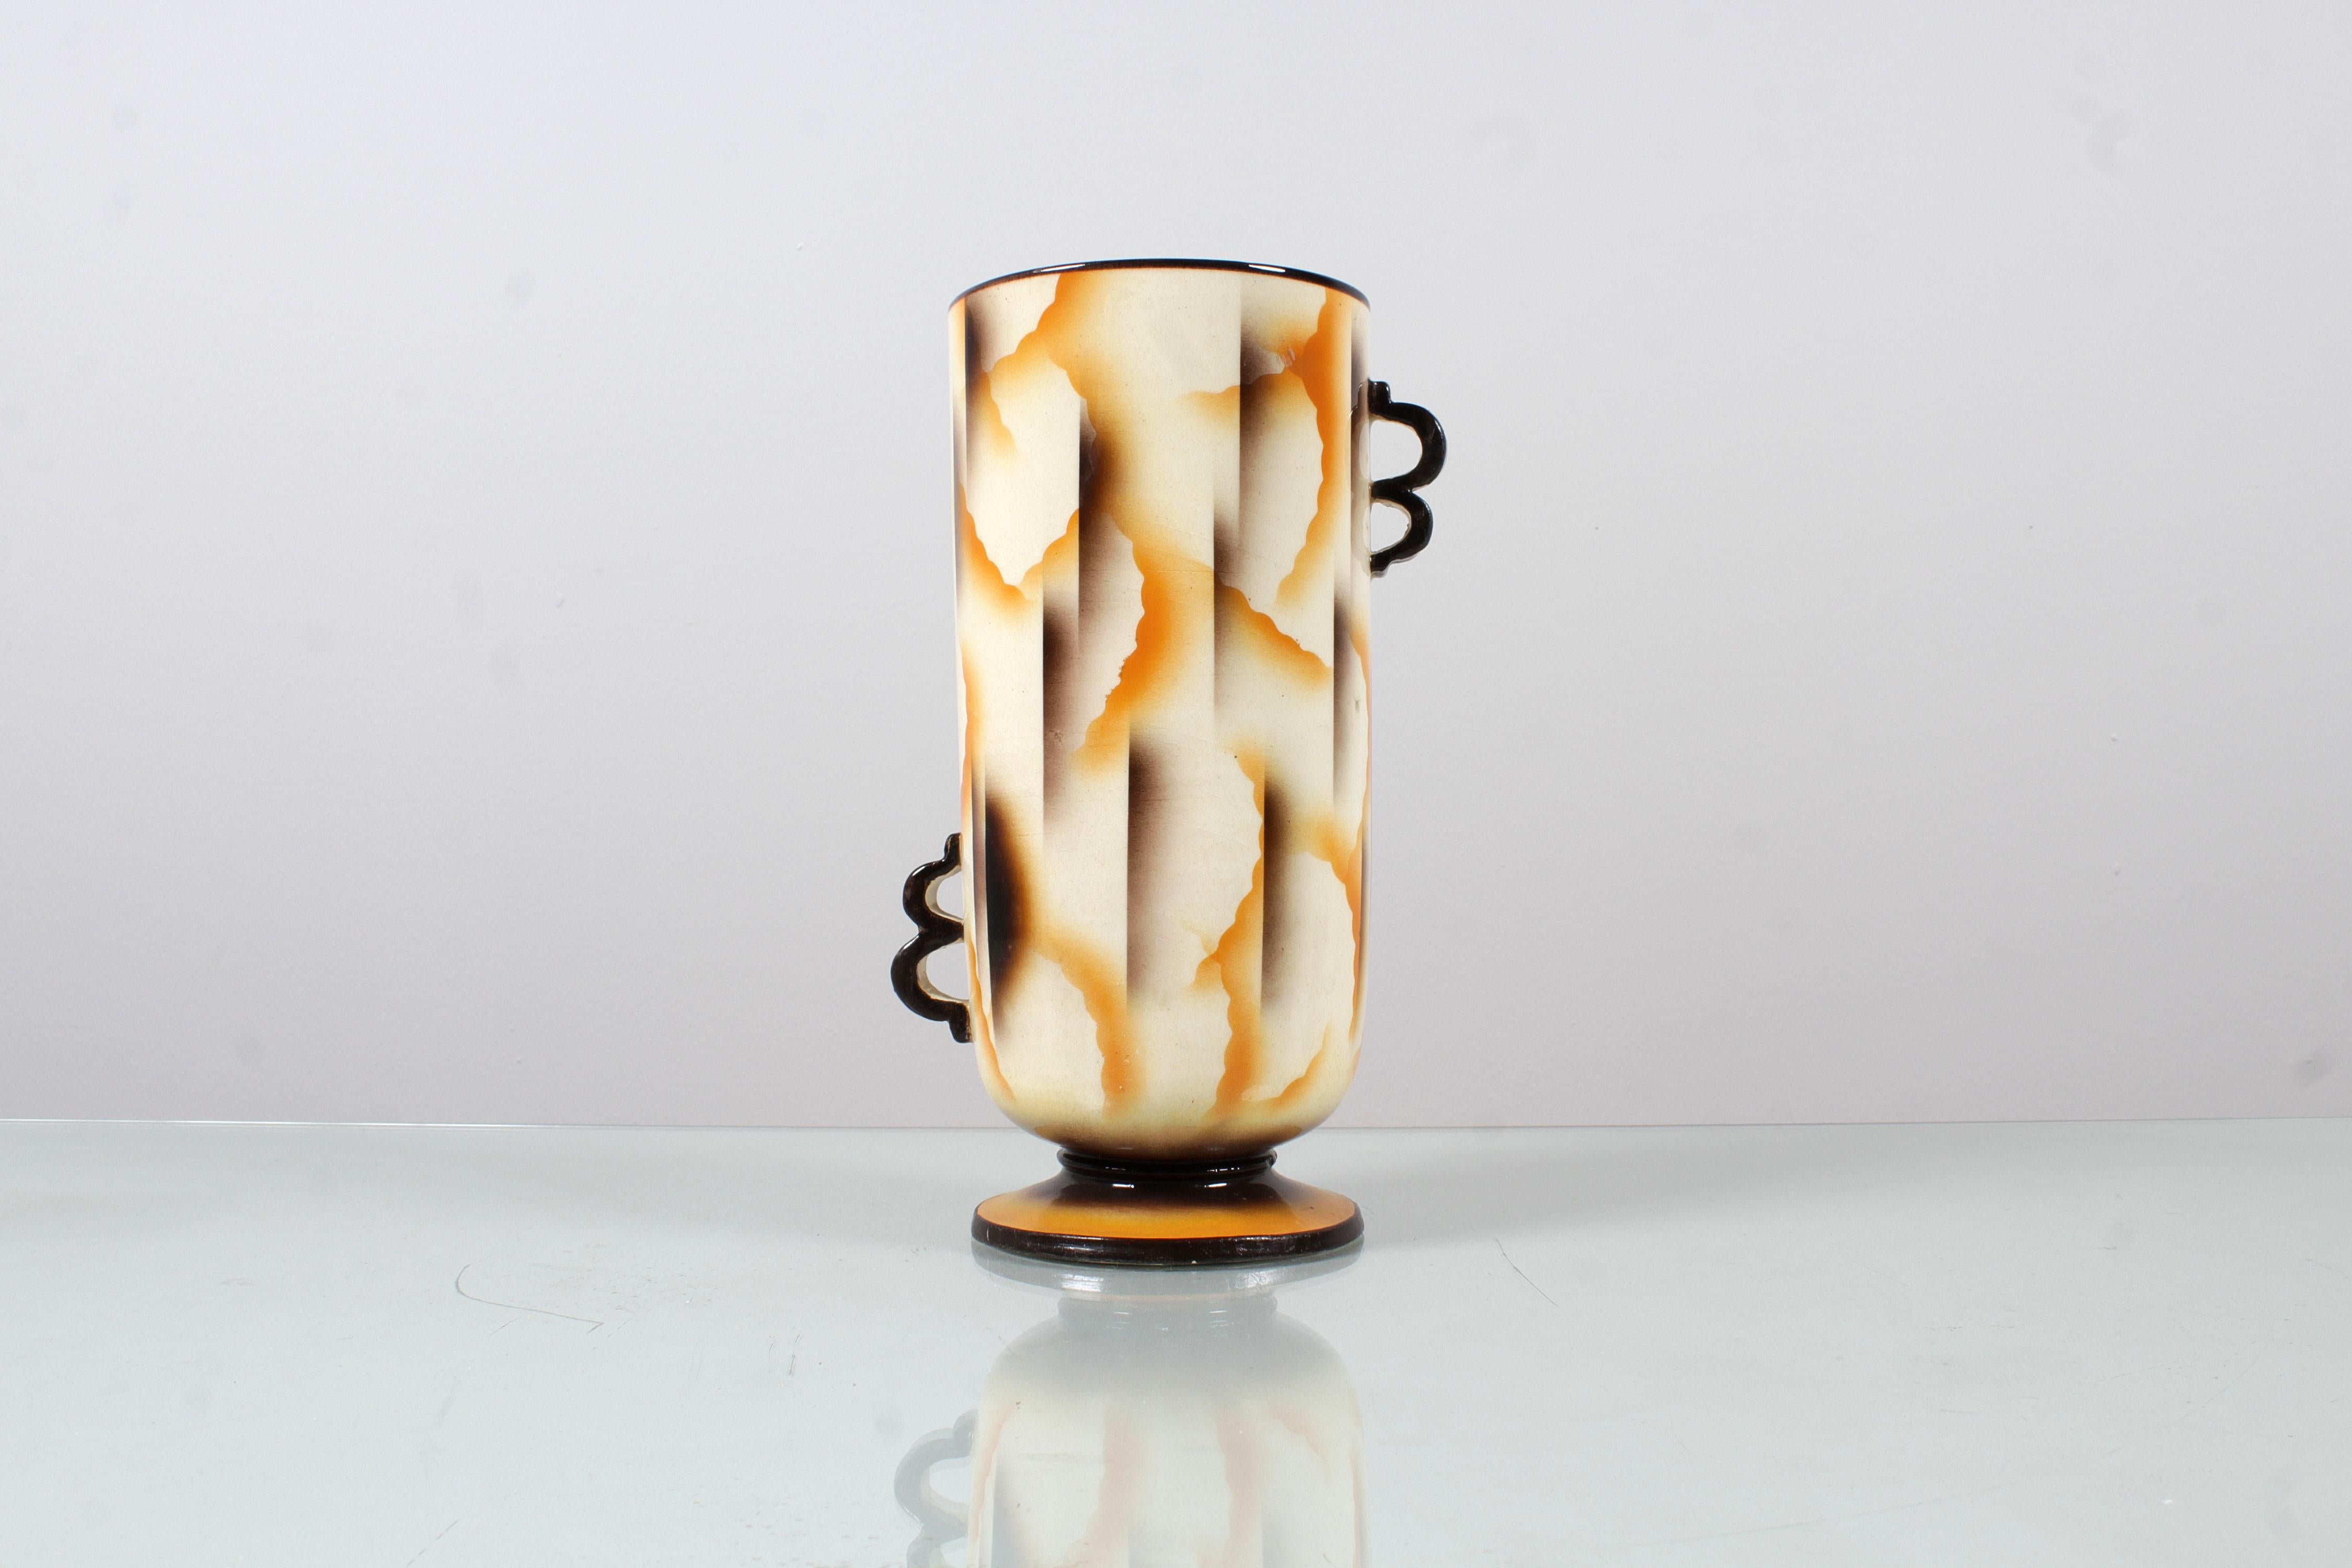 Sehr seltene Vase mit versetzten Henkeln aus den 1930er Jahren aus der Manufaktur Carraresi - Lucchesi (Virgilio Carraresi und Daniele Lucchesi) , Sesto Fiorentino, dekoriert mit der Airbrush-Technik und mit abstrakten Motiven in Braun- und